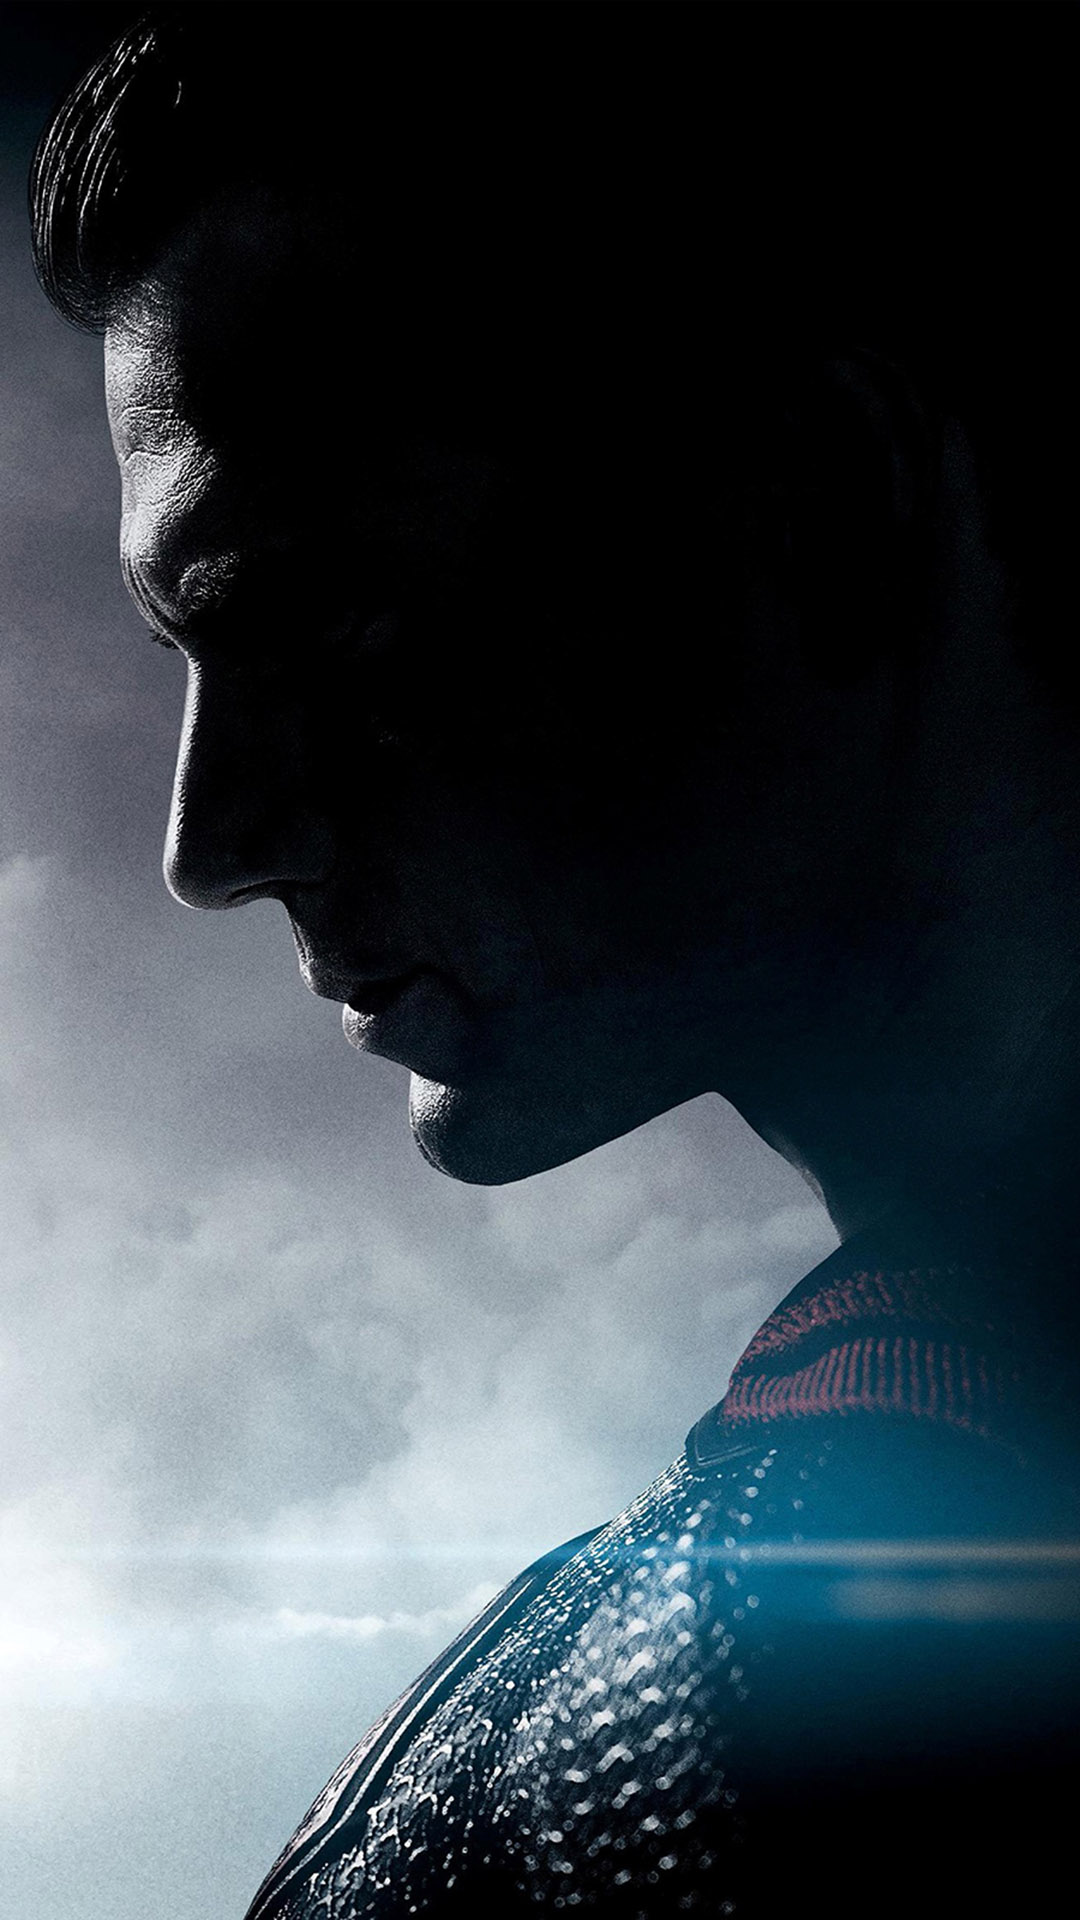 Batman-Vs-Superman-Movie-2016-Logo-Dark-Black-Poster-WallpapersByte-com-1080x1920.jpg